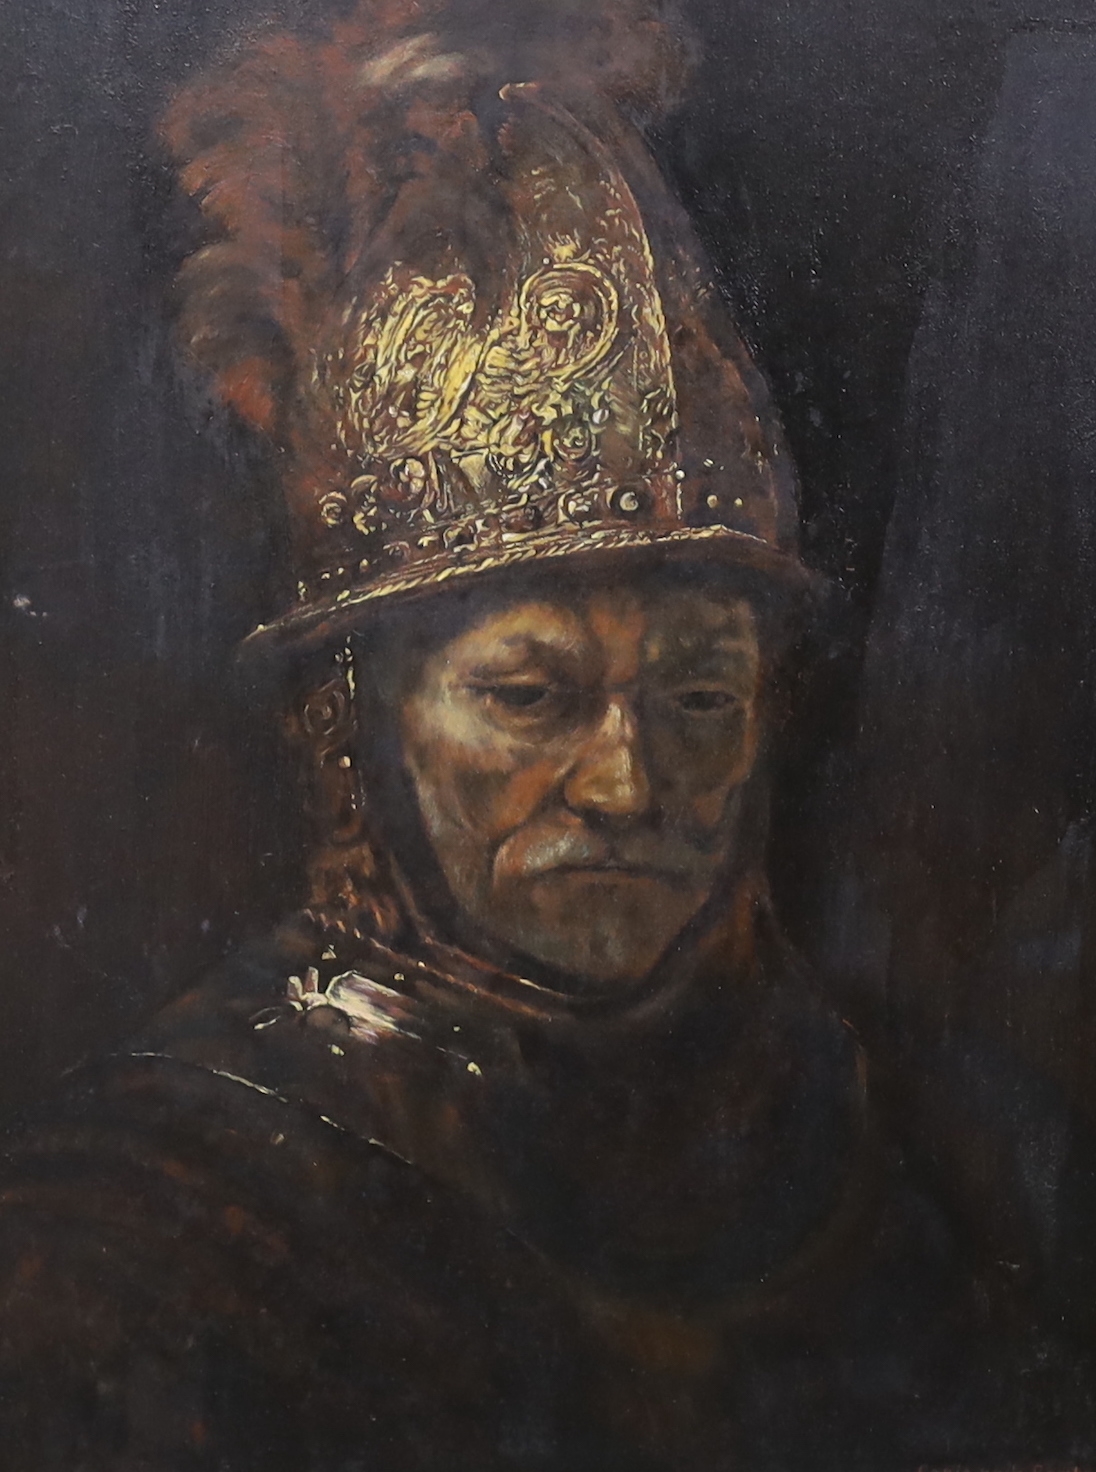 ‘The man with the golden helmet’, - Rembrandt van Rijn